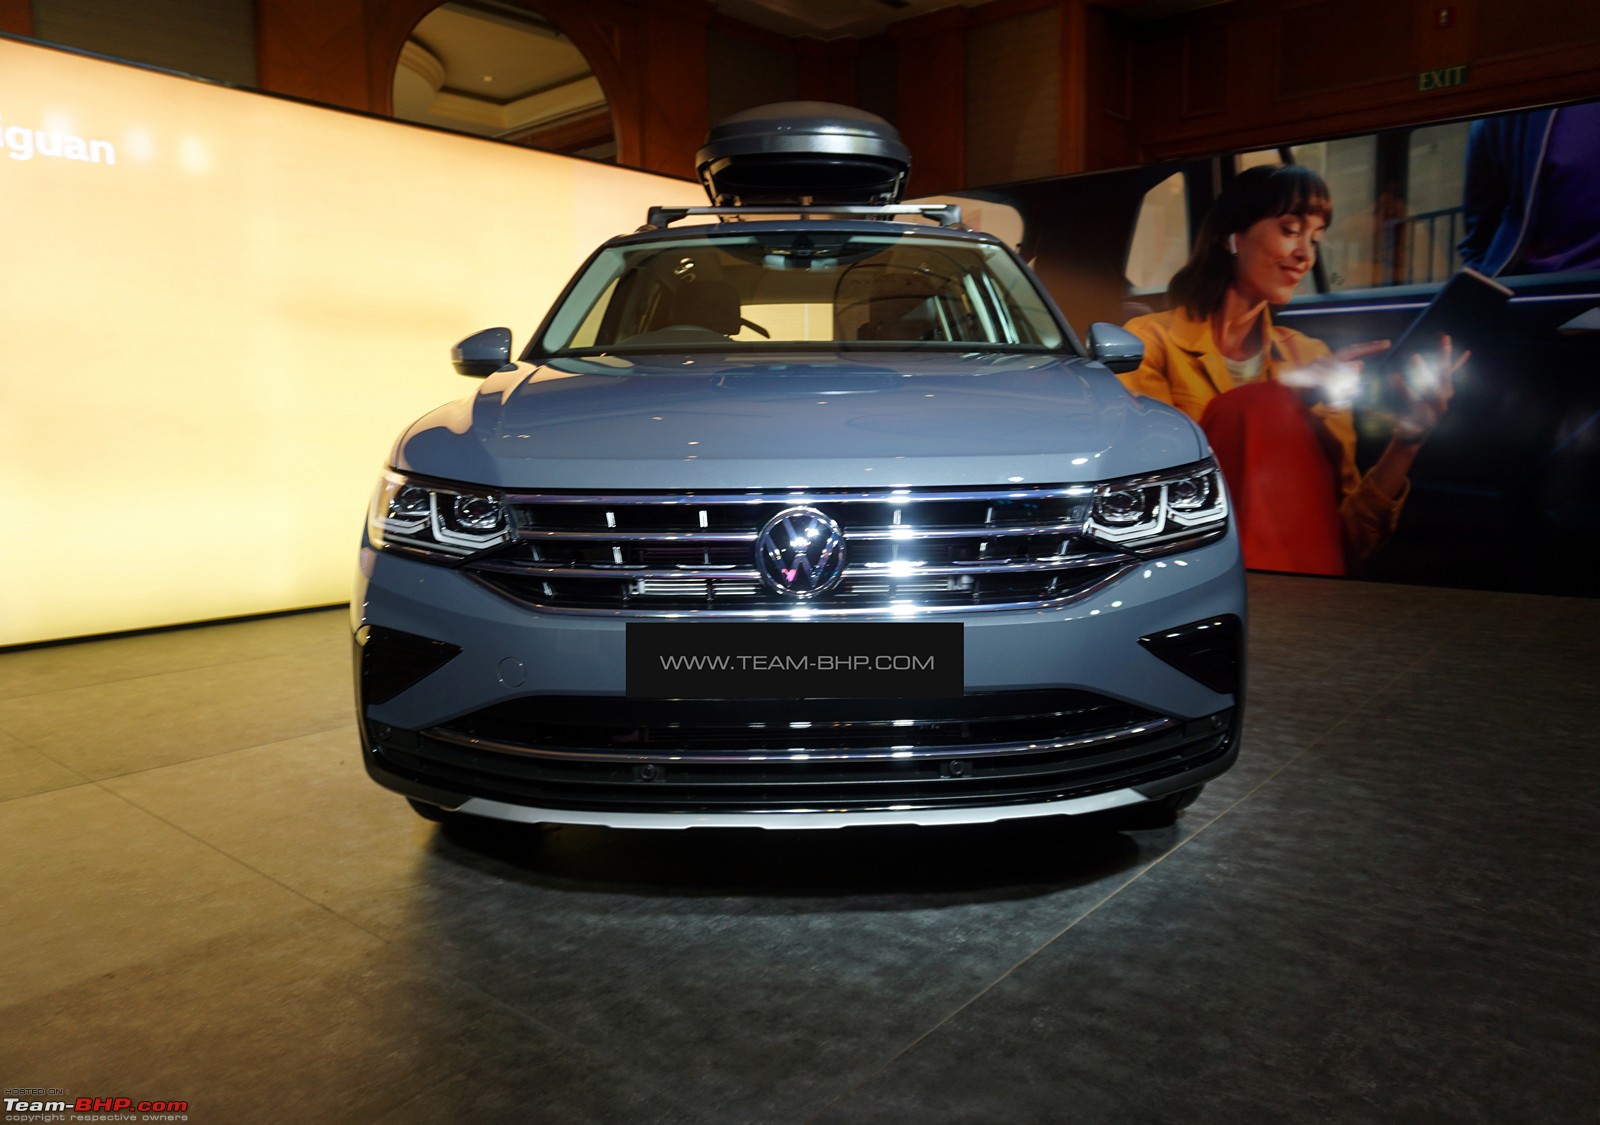 2021 Volkswagen Tiguan: Features, Trim Options, Interior, Performance